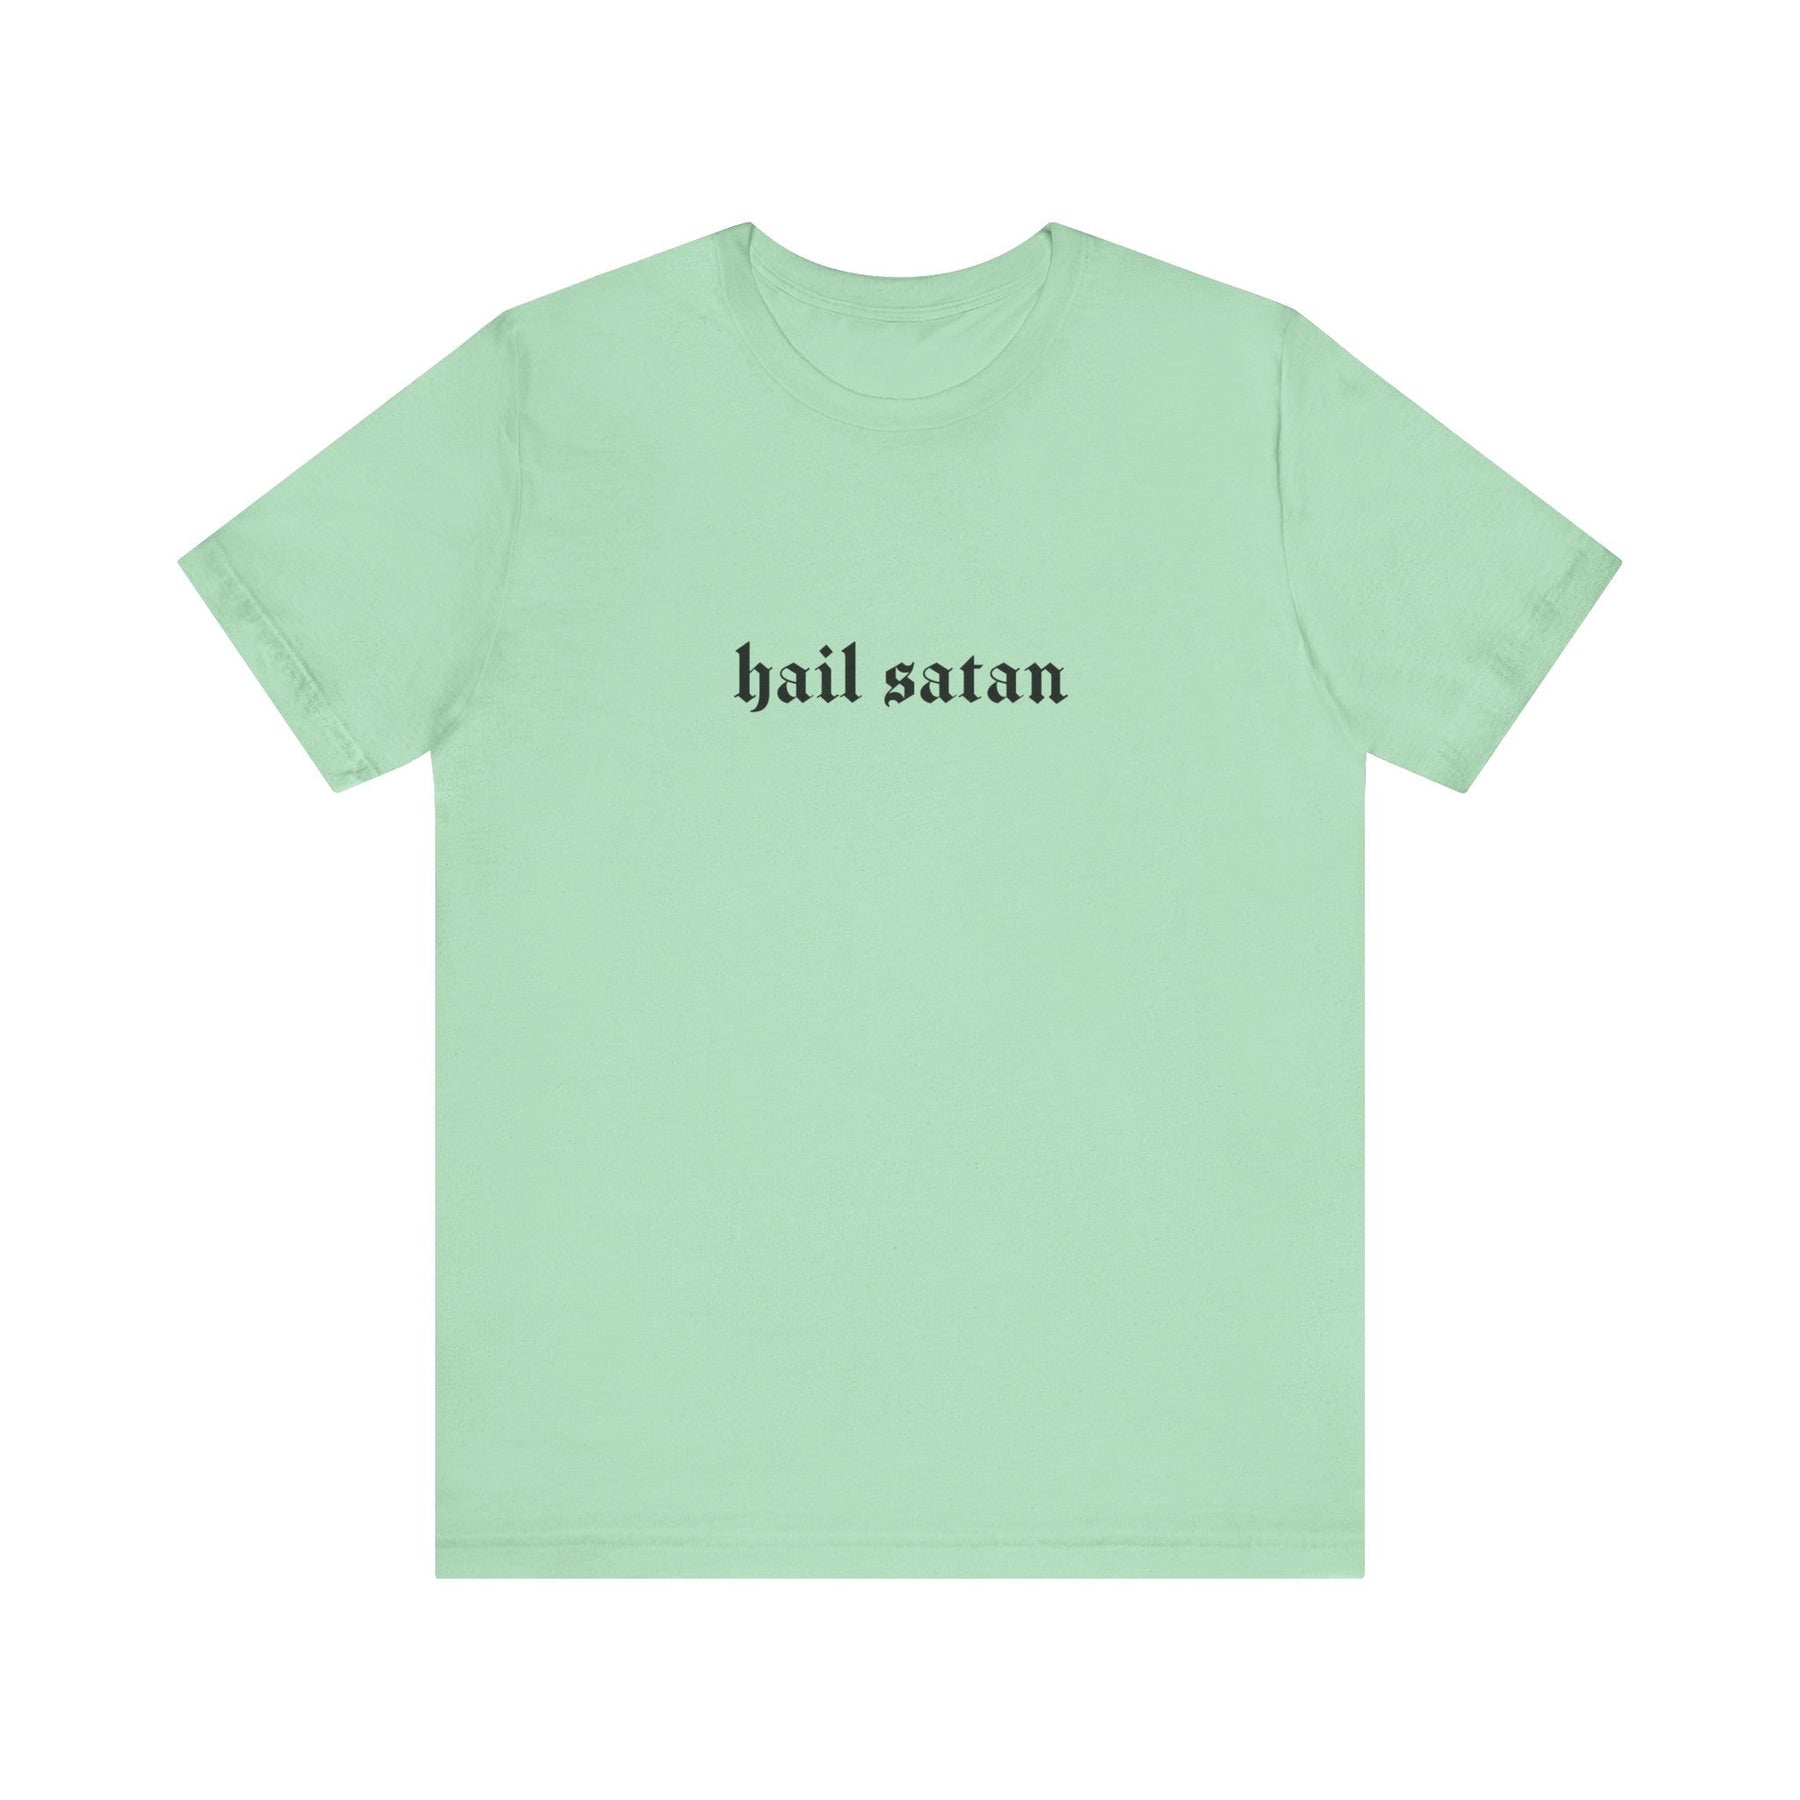 Hail Satan Gothic T - Shirt - Goth Cloth Co.T - Shirt90987296989737469818